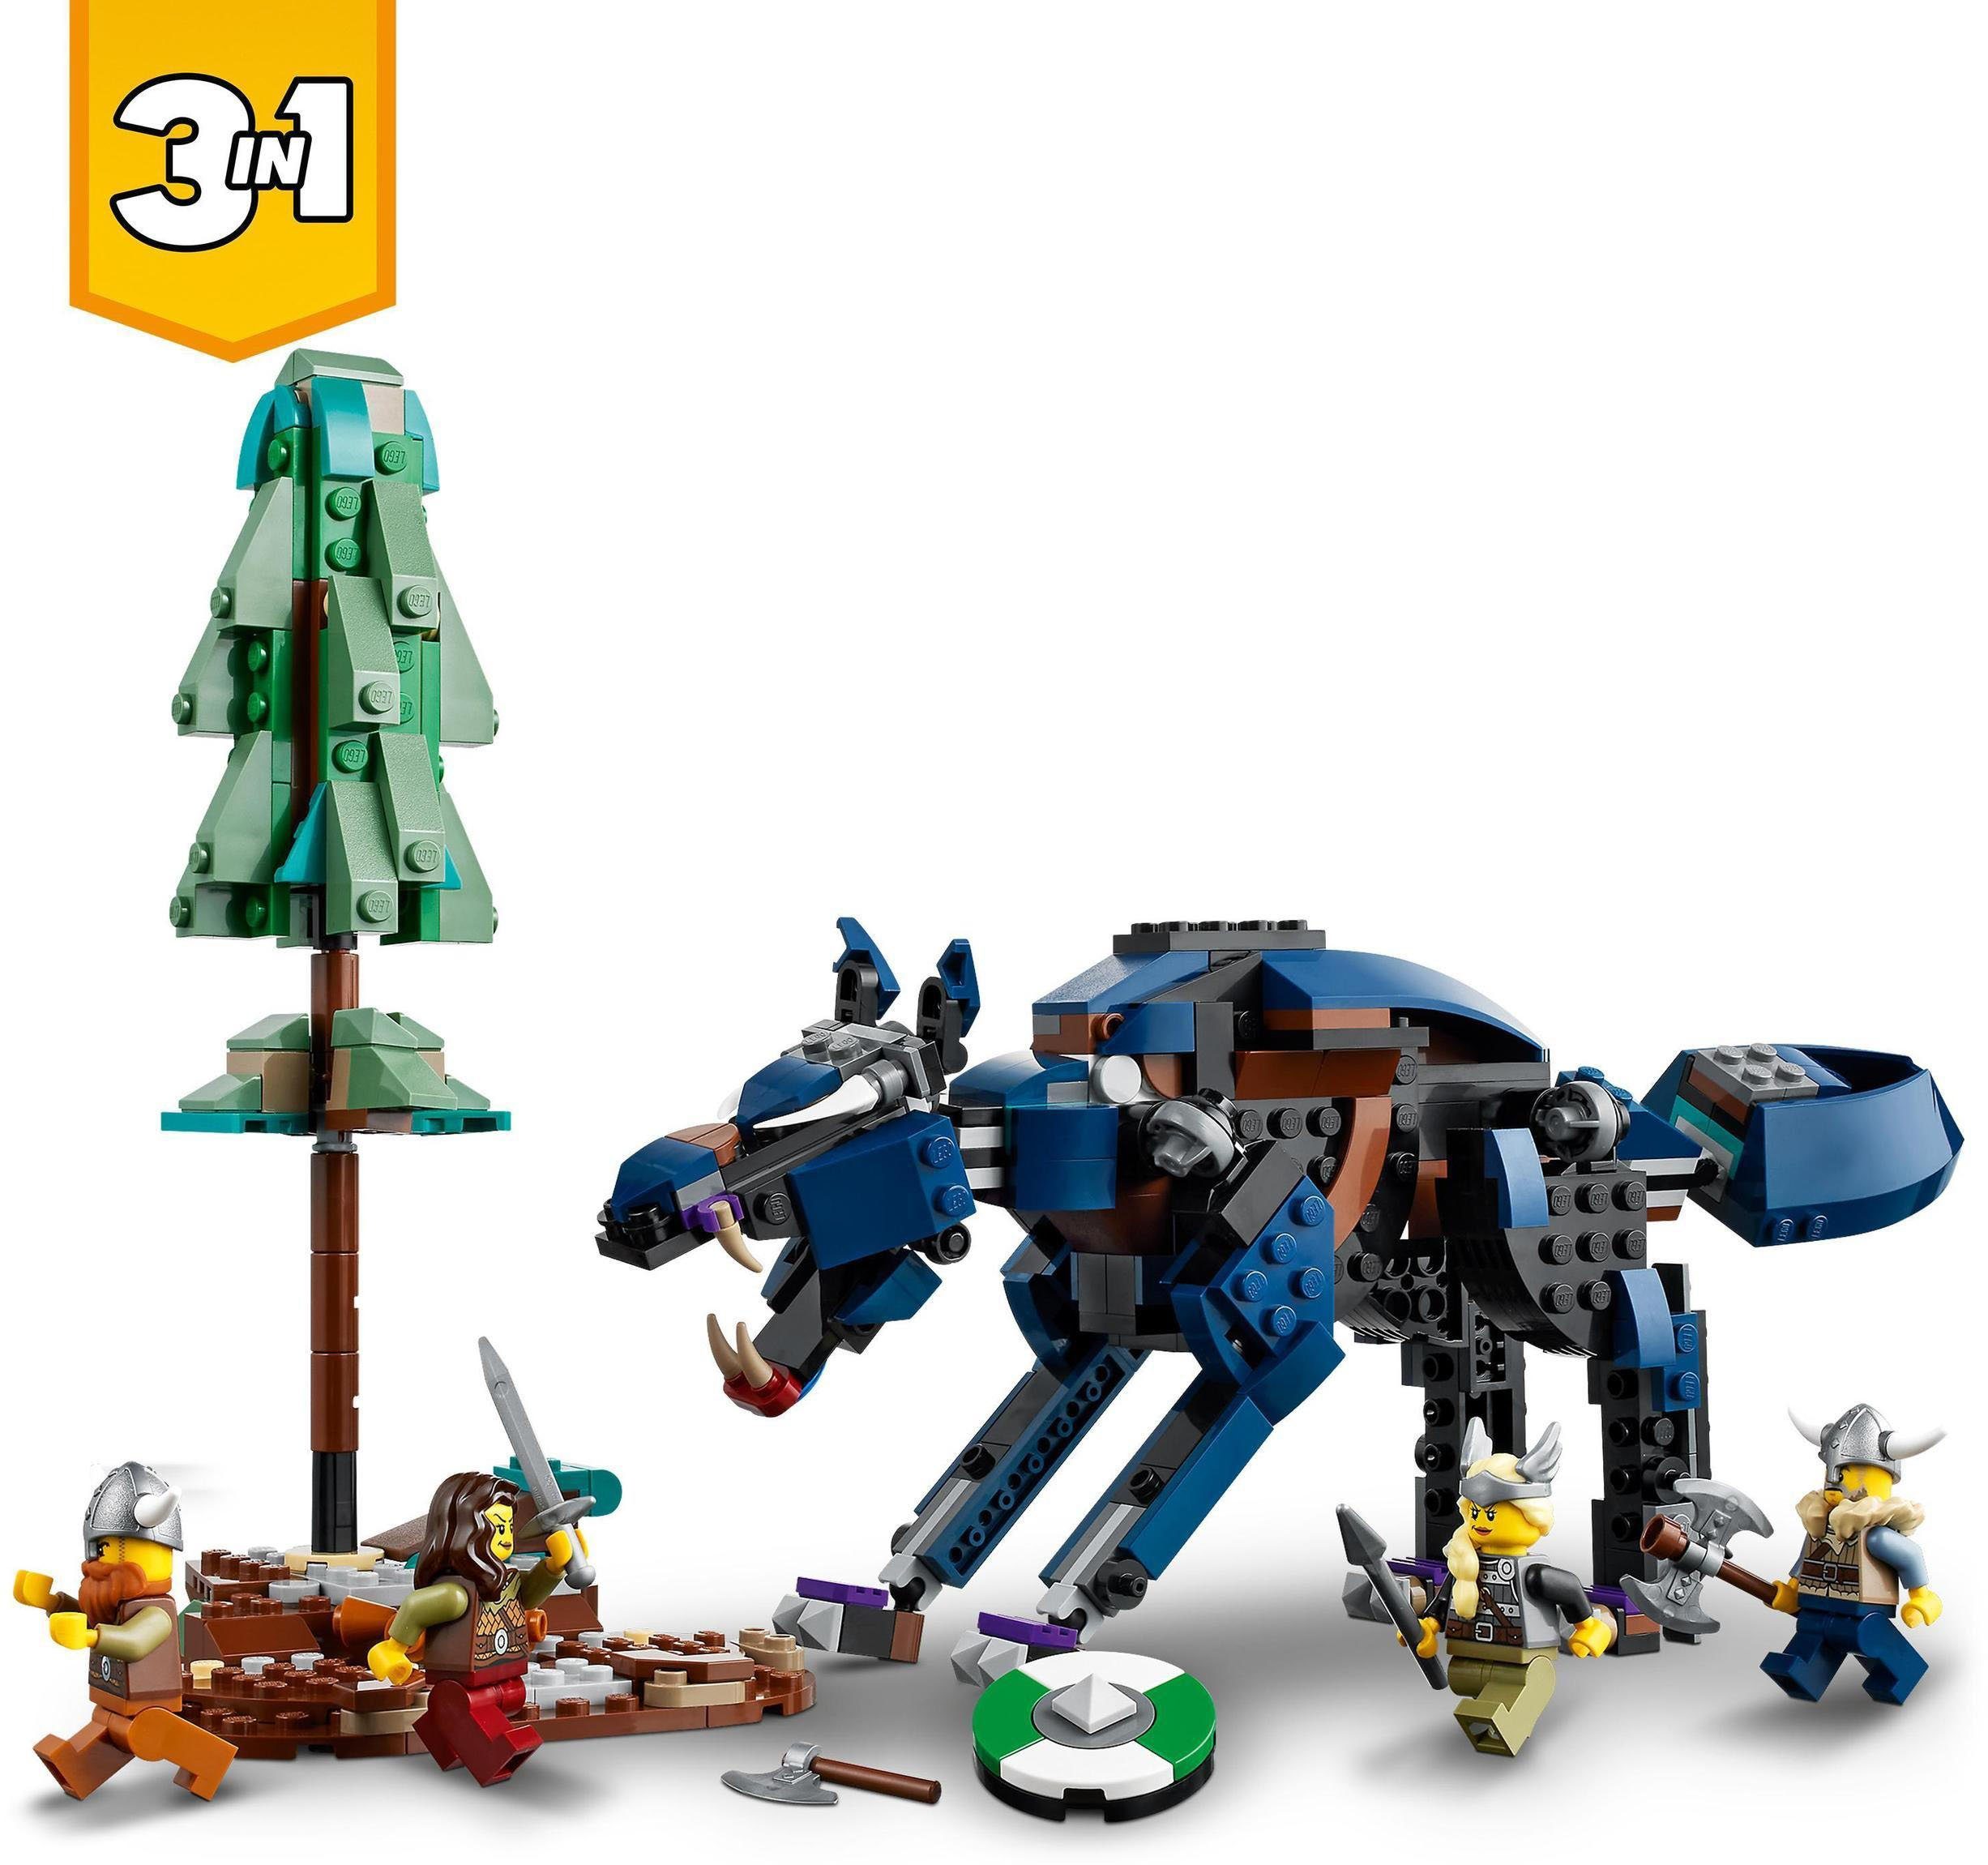 LEGO® Konstruktionsspielsteine mit 3in1, Made Creator Europe in Wikingerschiff (31132), LEGO® Midgardschlange St), (1192